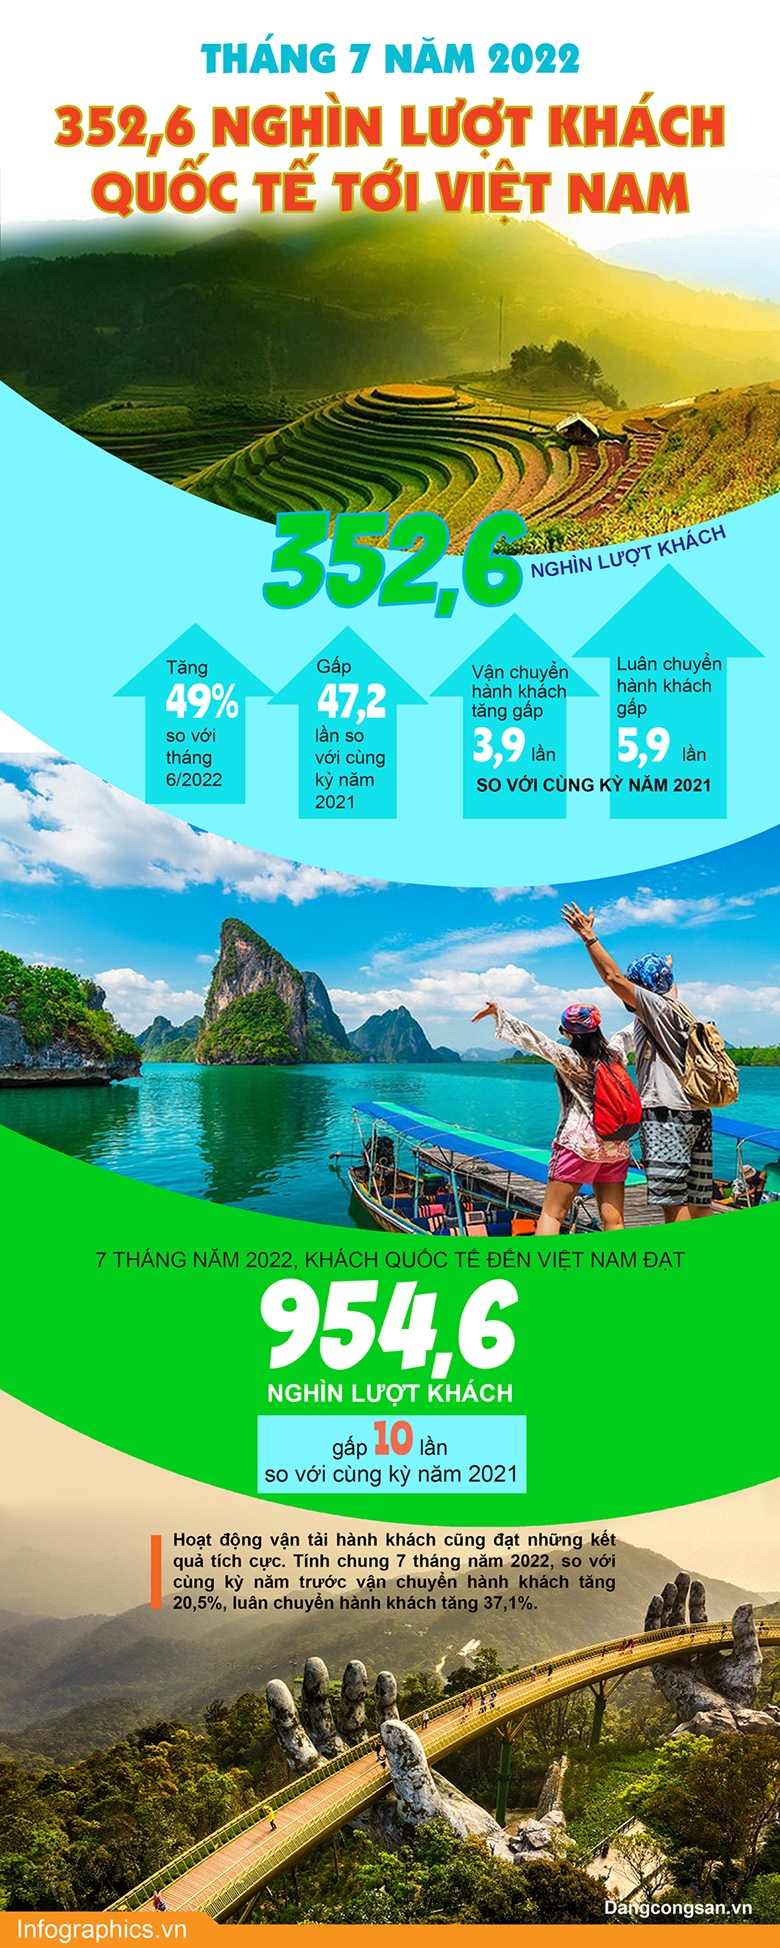 Hình ảnh: Tháng 7/2022: 352,6 nghìn lượt khách quốc tế tới Việt Nam số 1